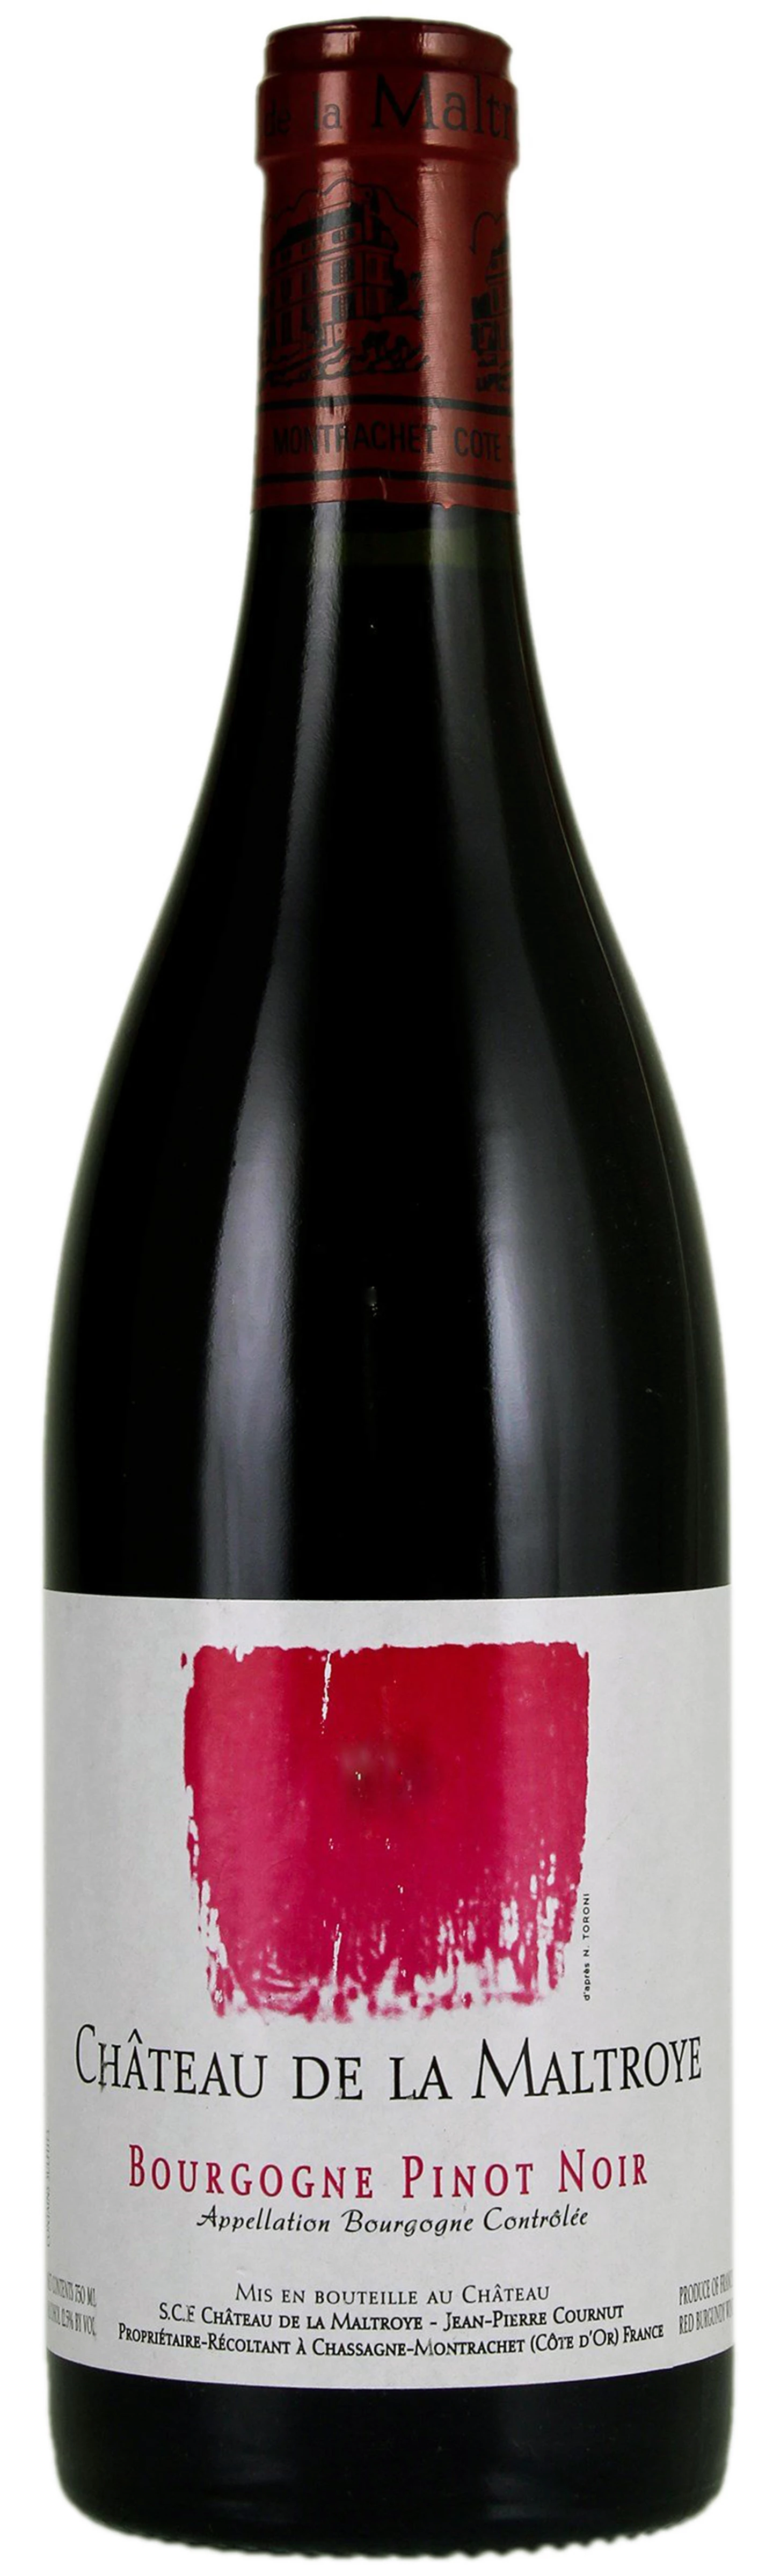 Maltroye_Bourgogne-Pinot-Noir